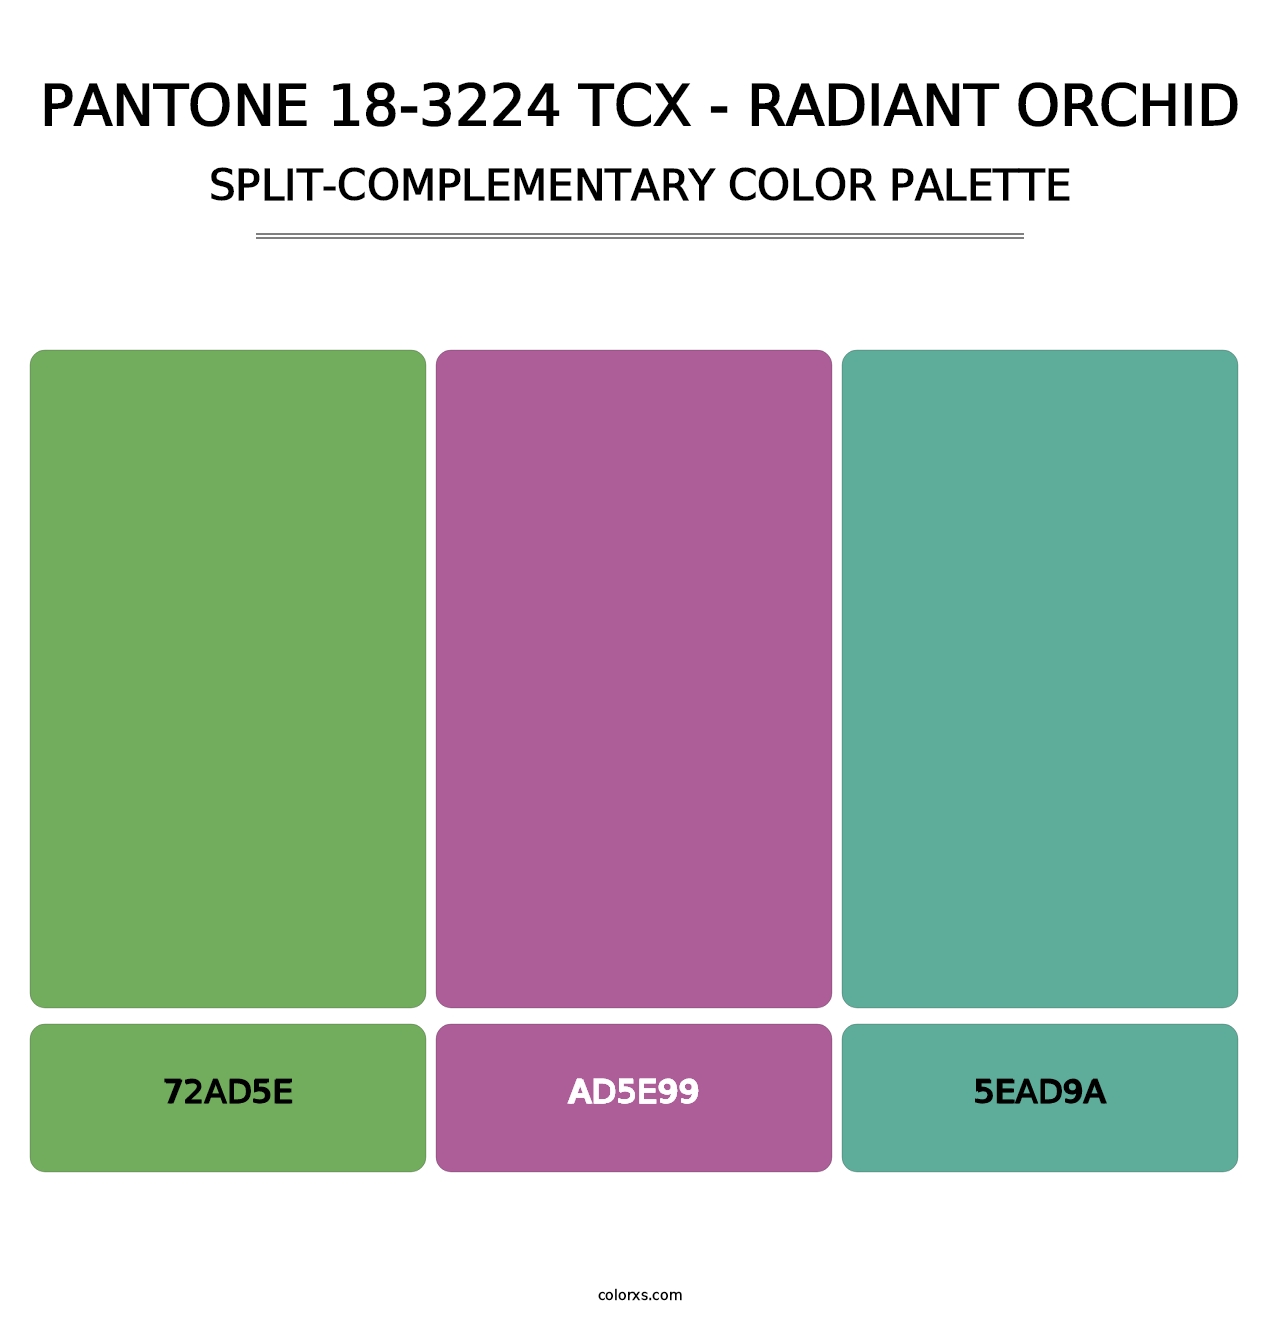 PANTONE 18-3224 TCX - Radiant Orchid - Split-Complementary Color Palette